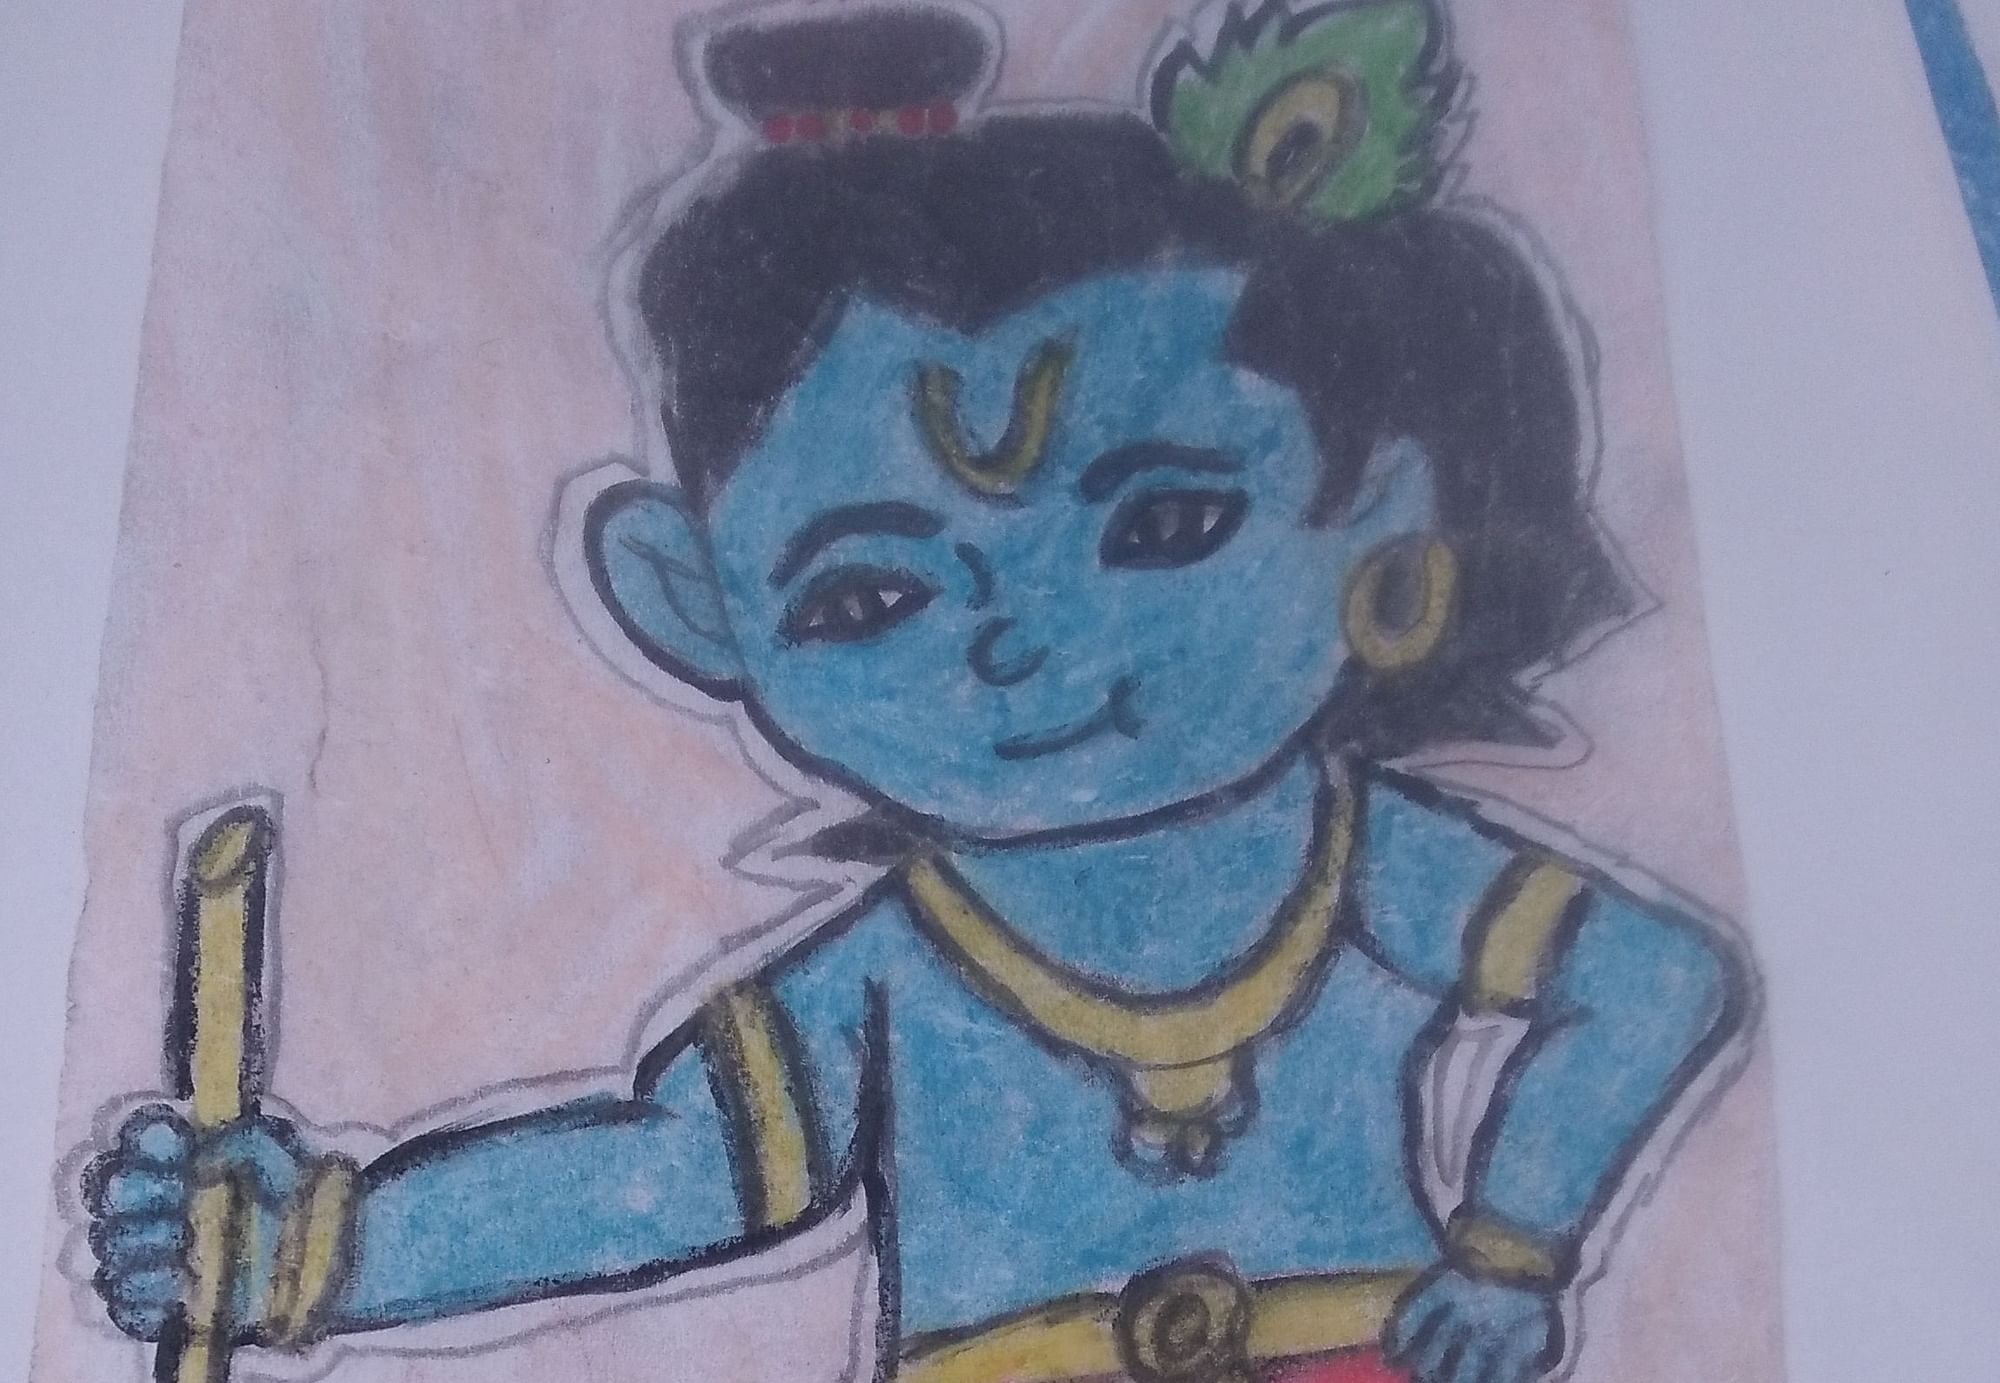 Little Krishna In Kawaii Style Stock Illustration - Download Image Now -  Baby - Human Age, Krishna, Avatar - iStock